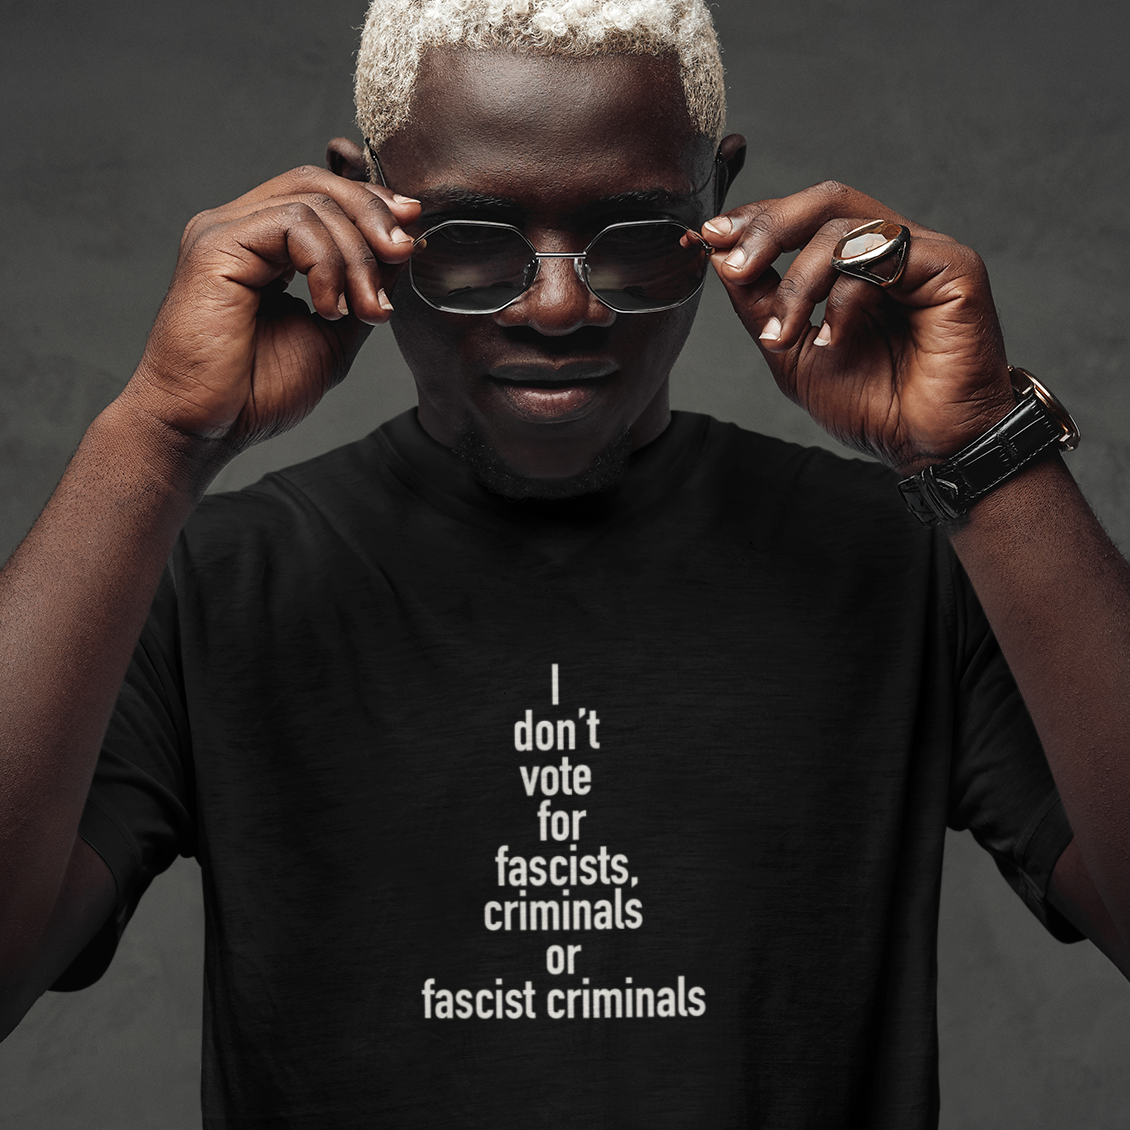 I Don't Vote for Fascists or Criminals - Unisex T-Shirt